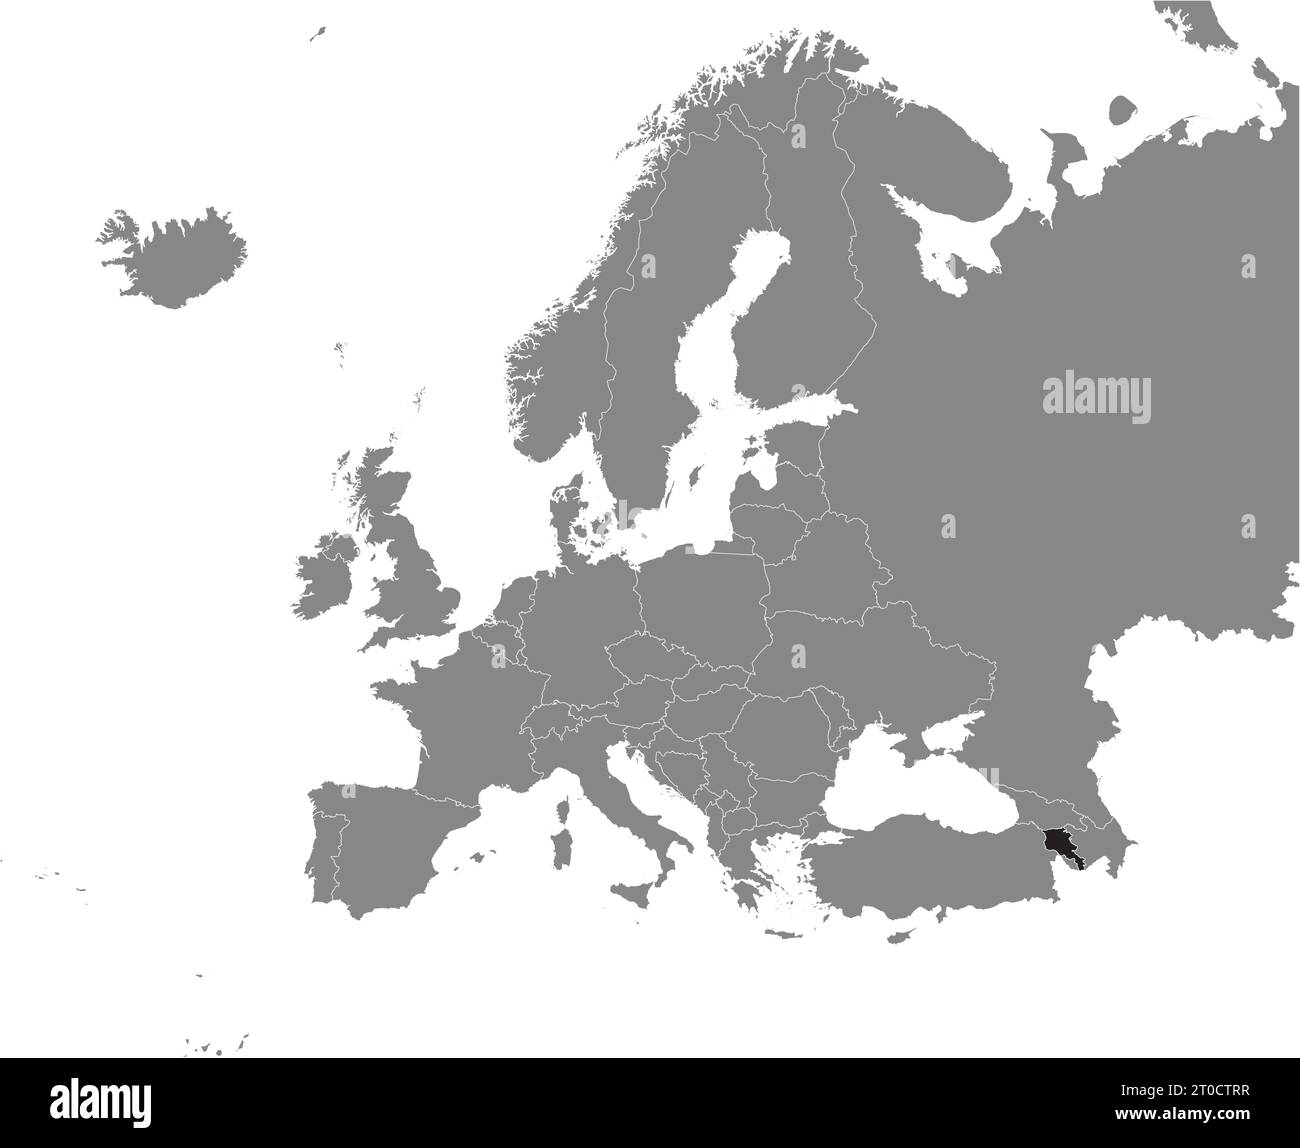 Carte de localisation de la RÉPUBLIQUE D'ARMÉNIE, EUROPE Illustration de Vecteur